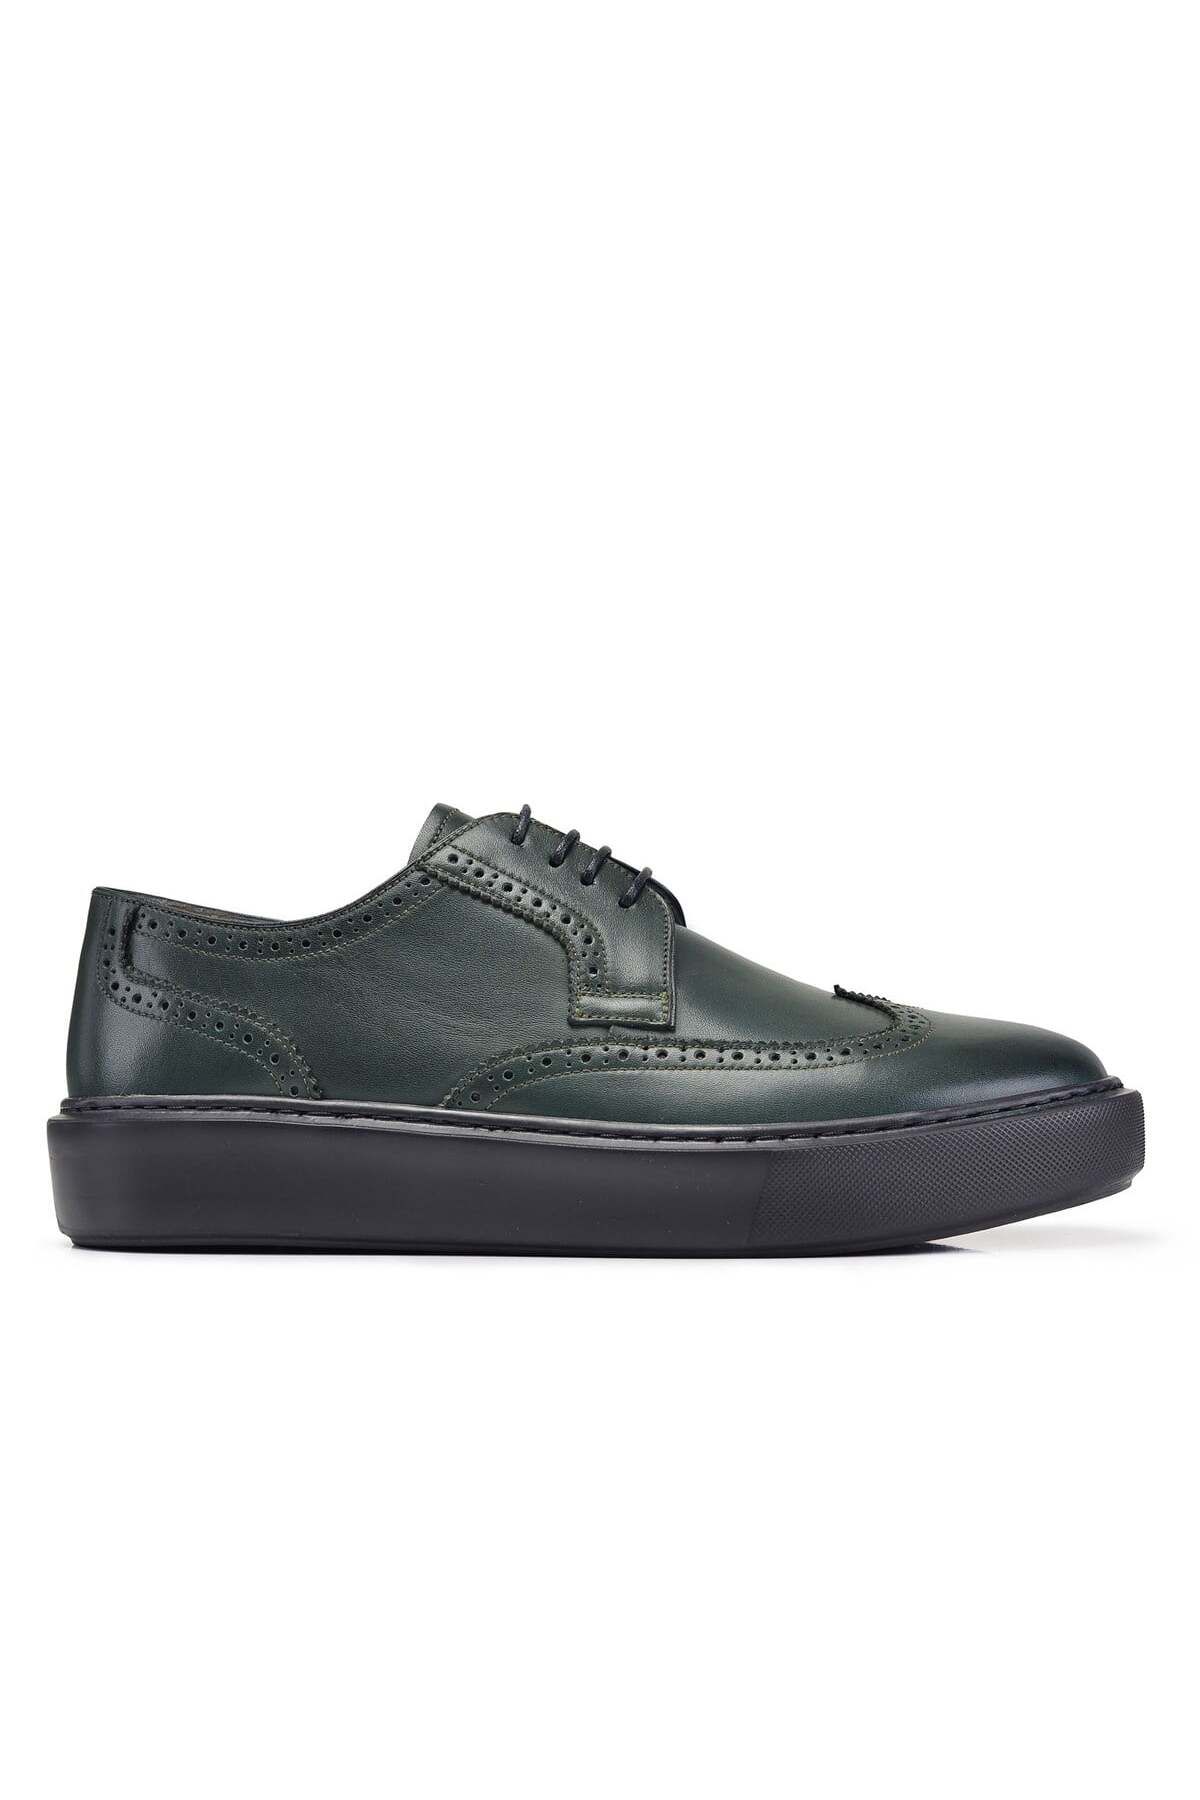 Nevzat Onay Yeşil Sneaker Erkek Ayakkabı -12339-